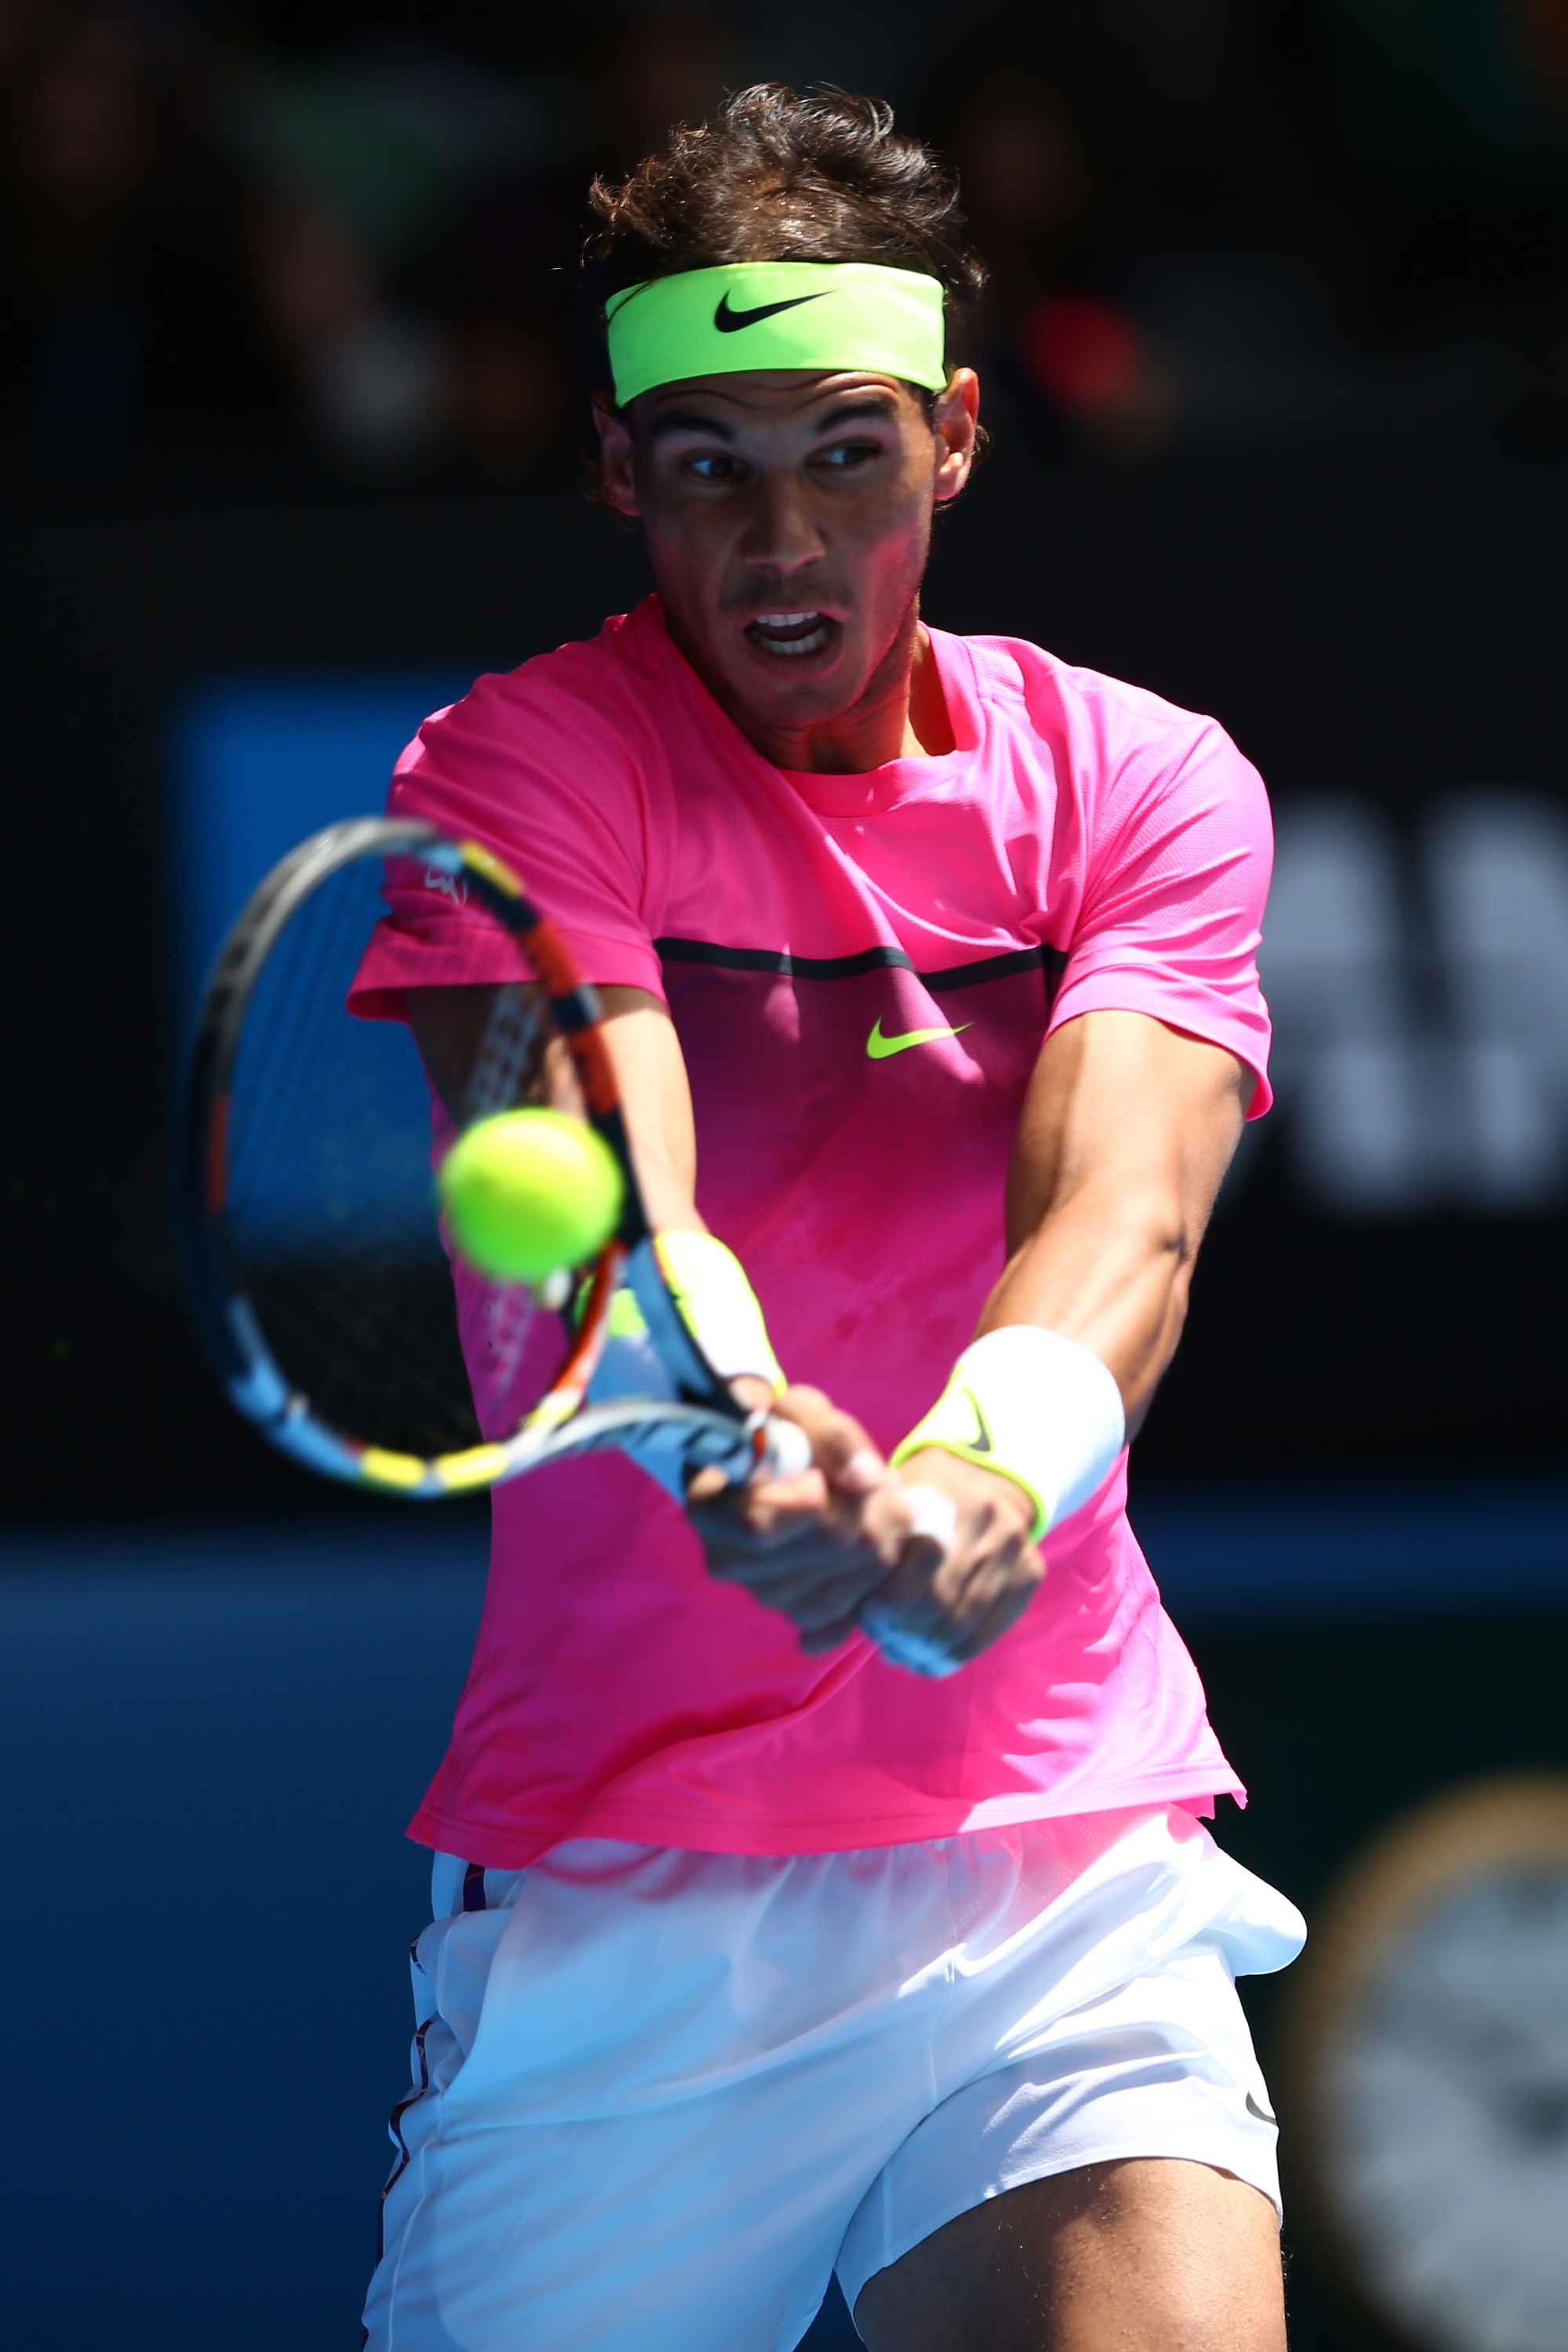 Rafael Nadal vs Mikhail Youzhny Open de Australia 2015 Pict. 1